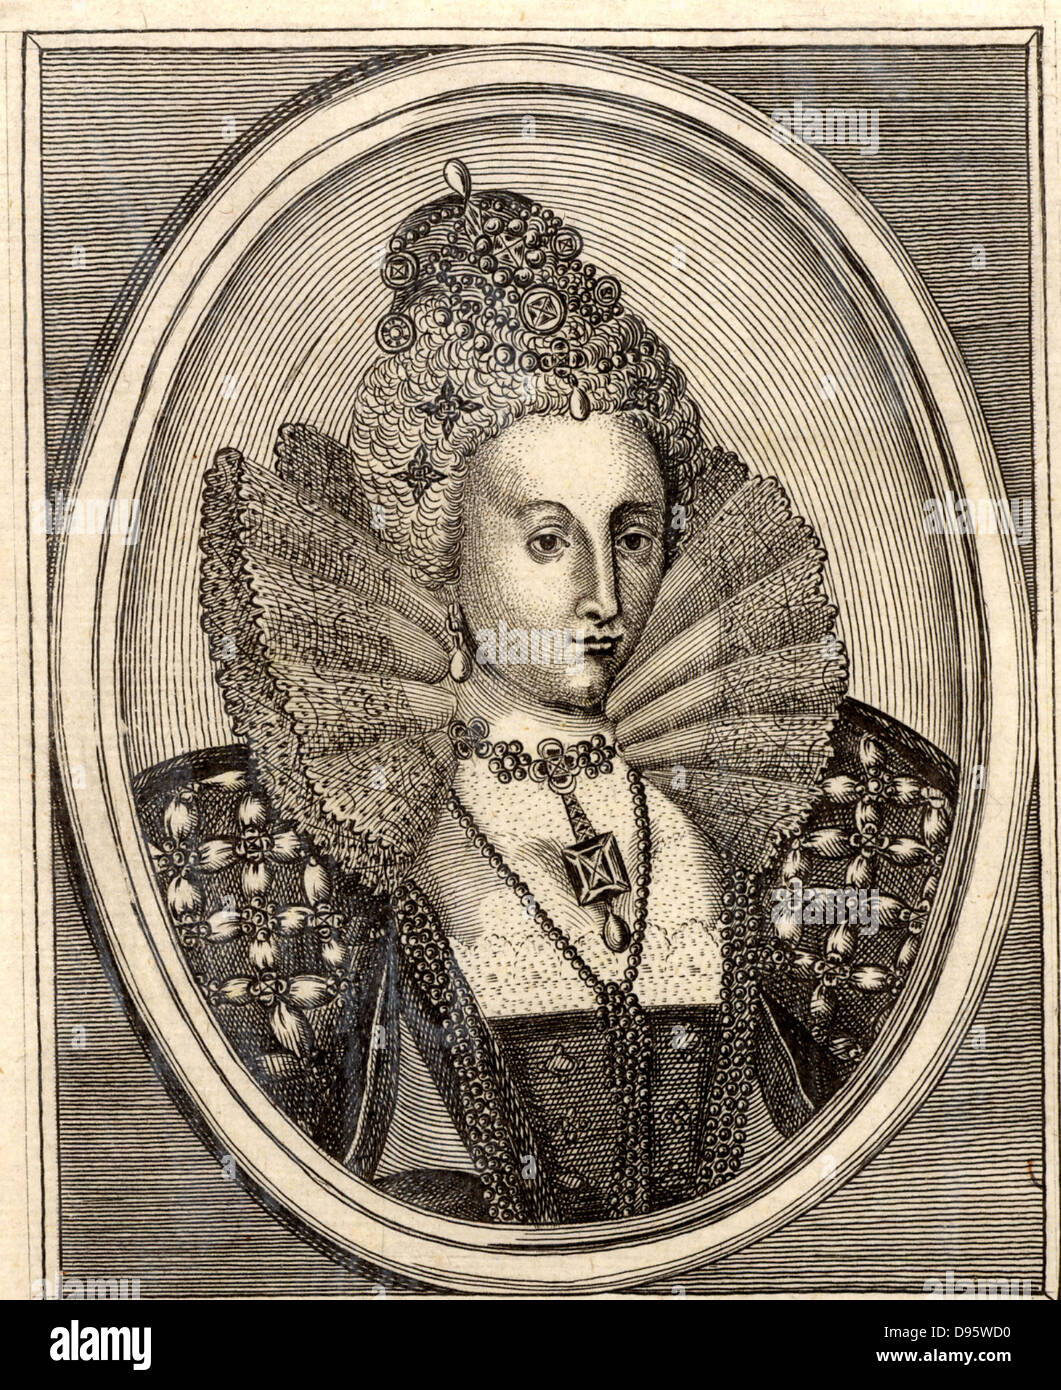 (Elizabeth I) Maalouf, reine d'Angleterre à partir de 1558. Dernière monarque Tudor d'Angleterre. Banque D'Images